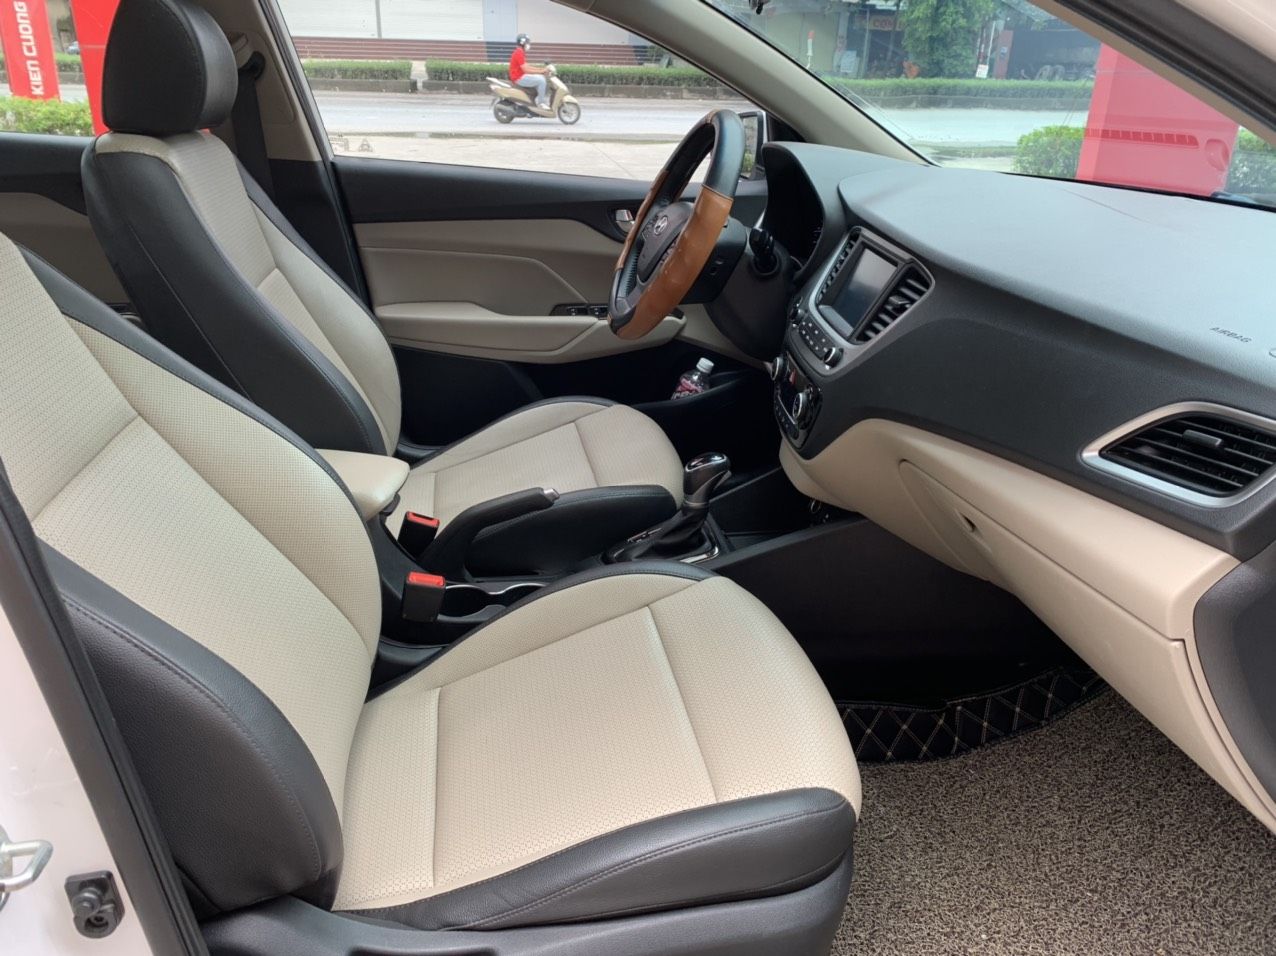 Hyundai Accent 2019 - Phiên bản full kịch nóc, trang bị nhiều option